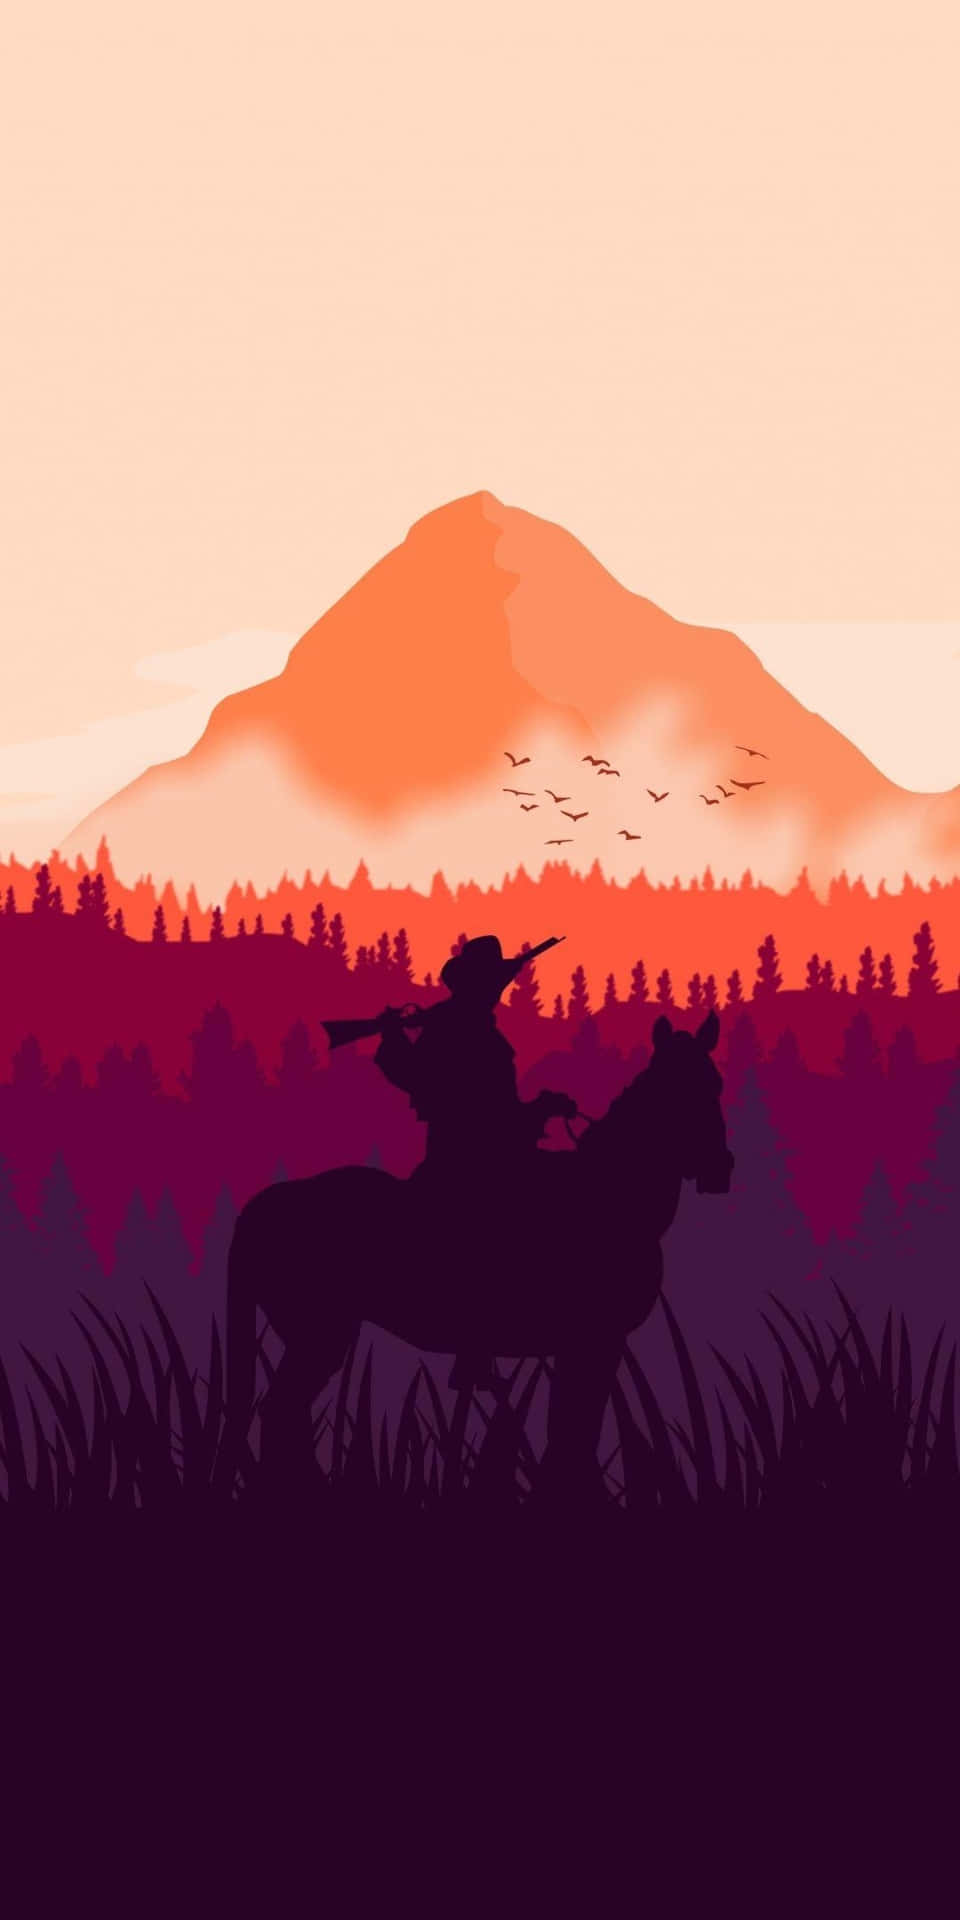 Pixel3 Sfondo Di Red Dead Redemption 2 Silhouette Di Un Cowboy Con Sfumature Viola E Arancioni